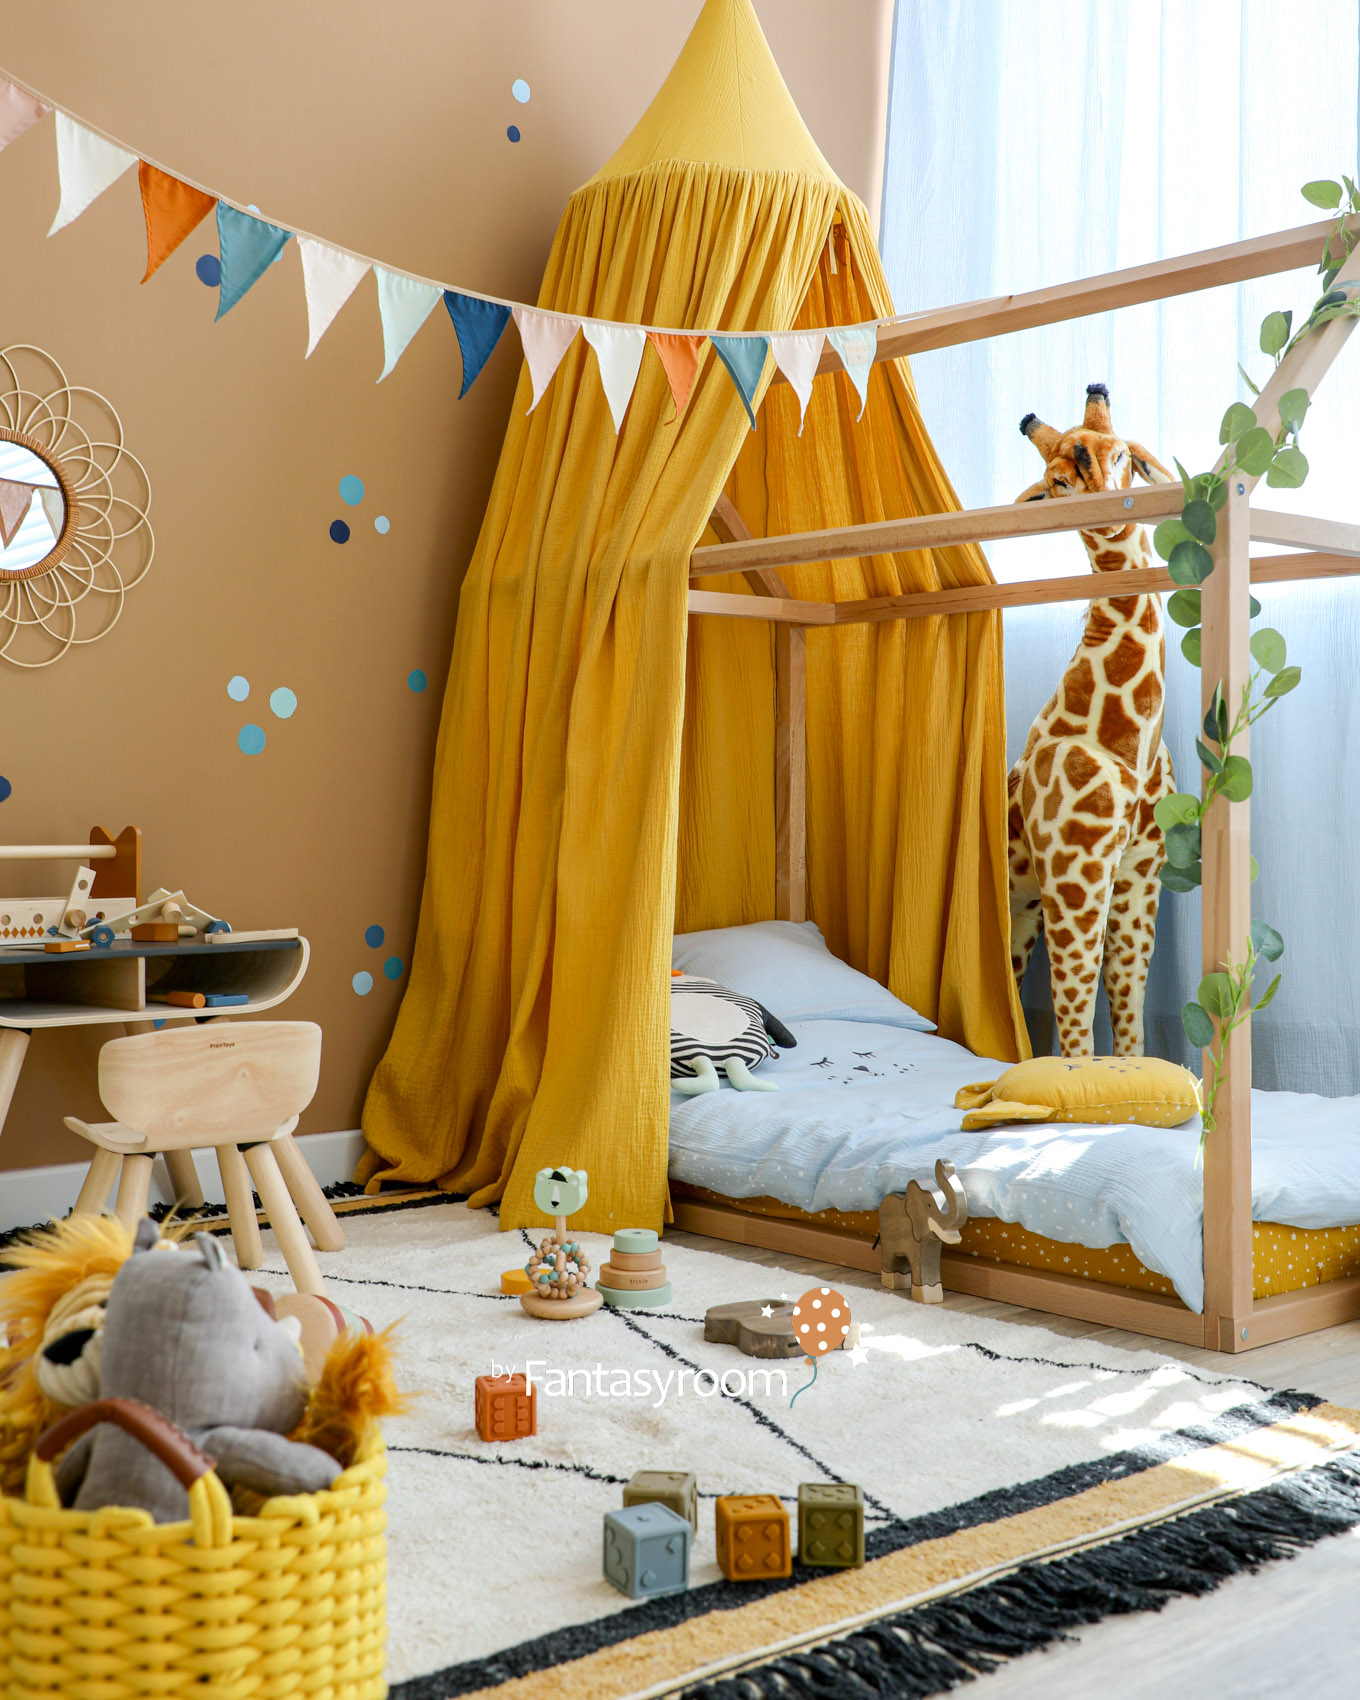 Kinderzimmer mit Hausbett, Musselin Baldachin und Spielecke